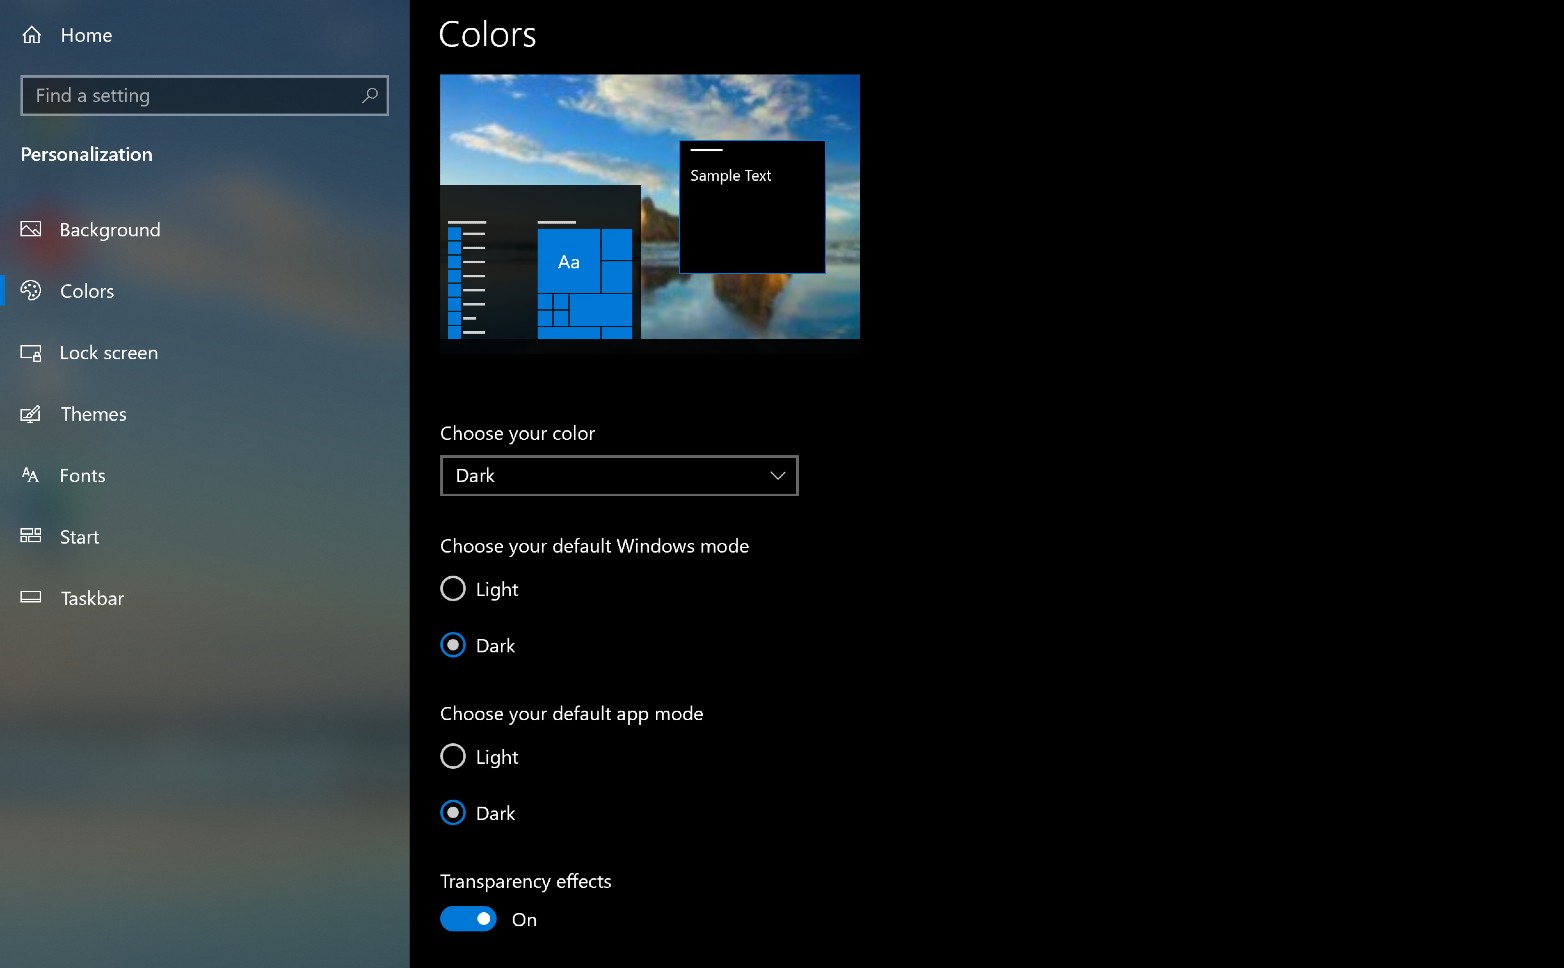 Tìm hiểu cách sử dụng và tùy chỉnh Menu Bắt đầu trên Windows 10 để tối ưu hóa trải nghiệm làm việc của bạn. Tự do tùy chỉnh giao diện của máy tính để phù hợp với phong cách và nhu cầu của bạn. 